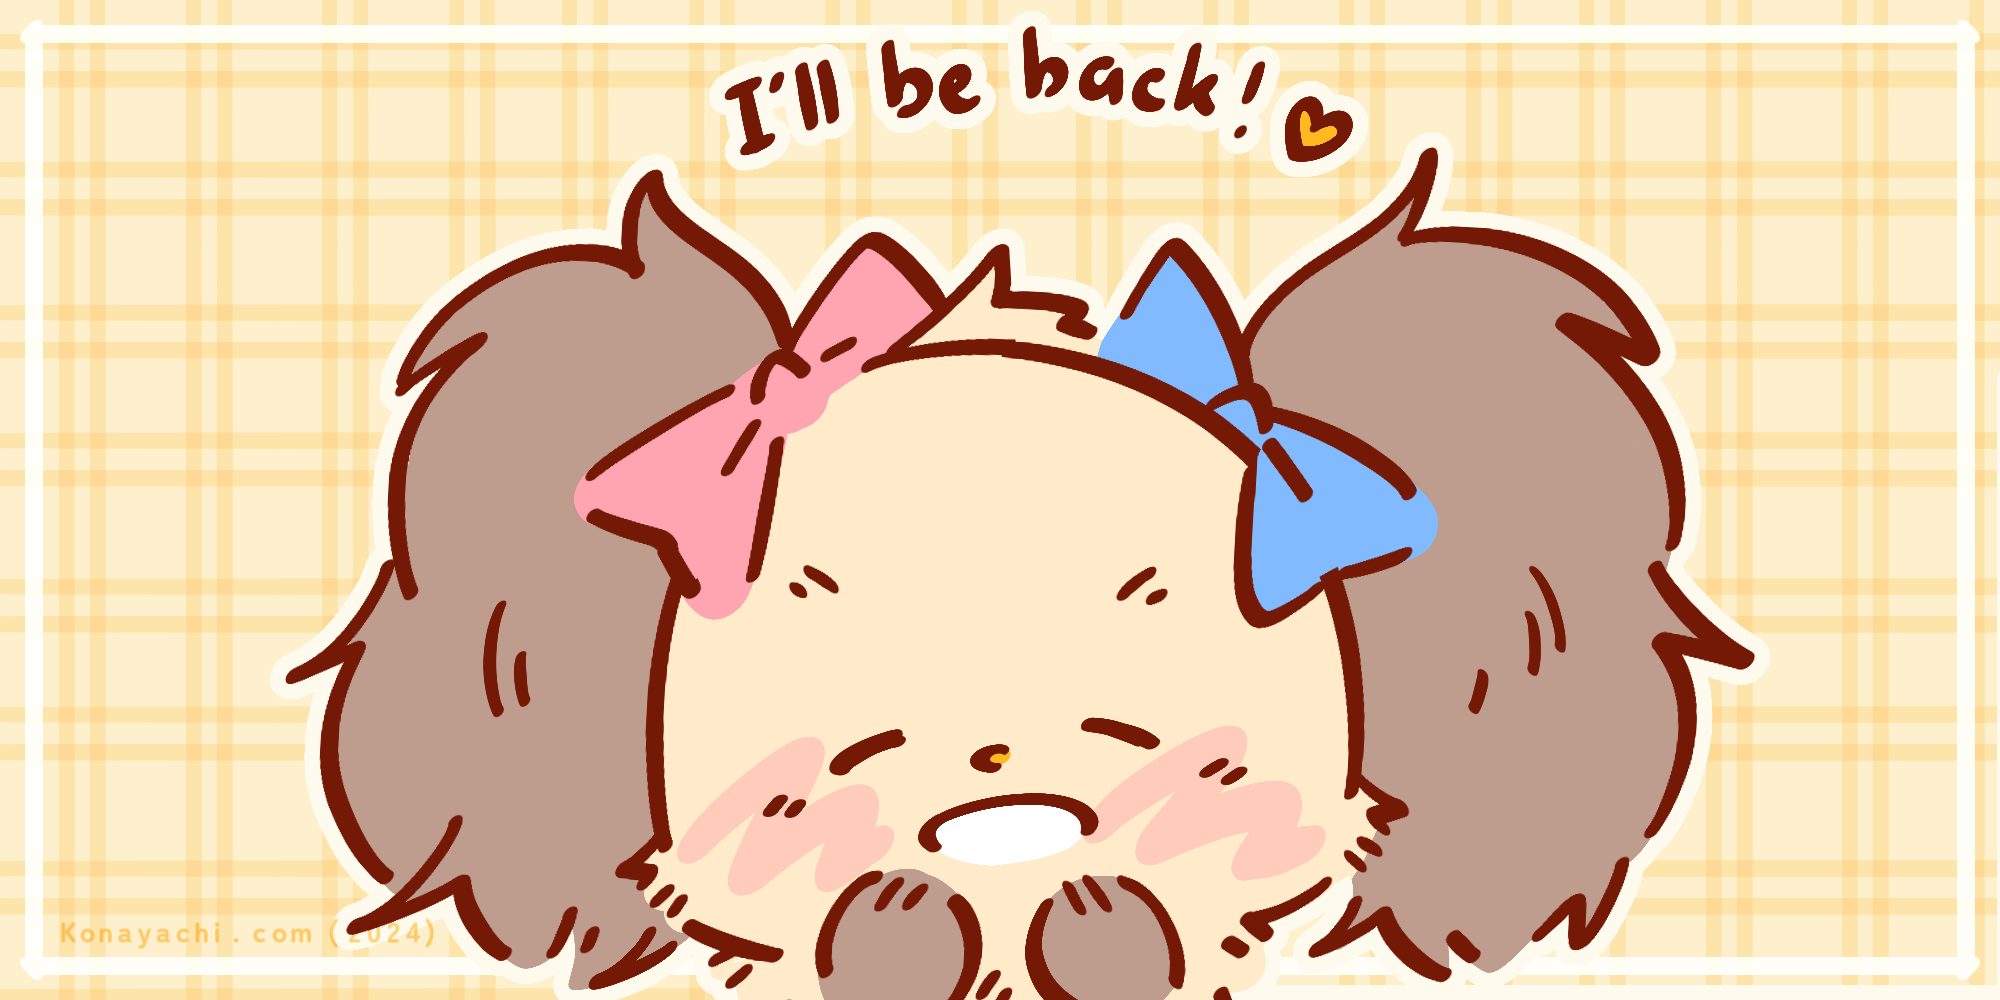 I'll be back!